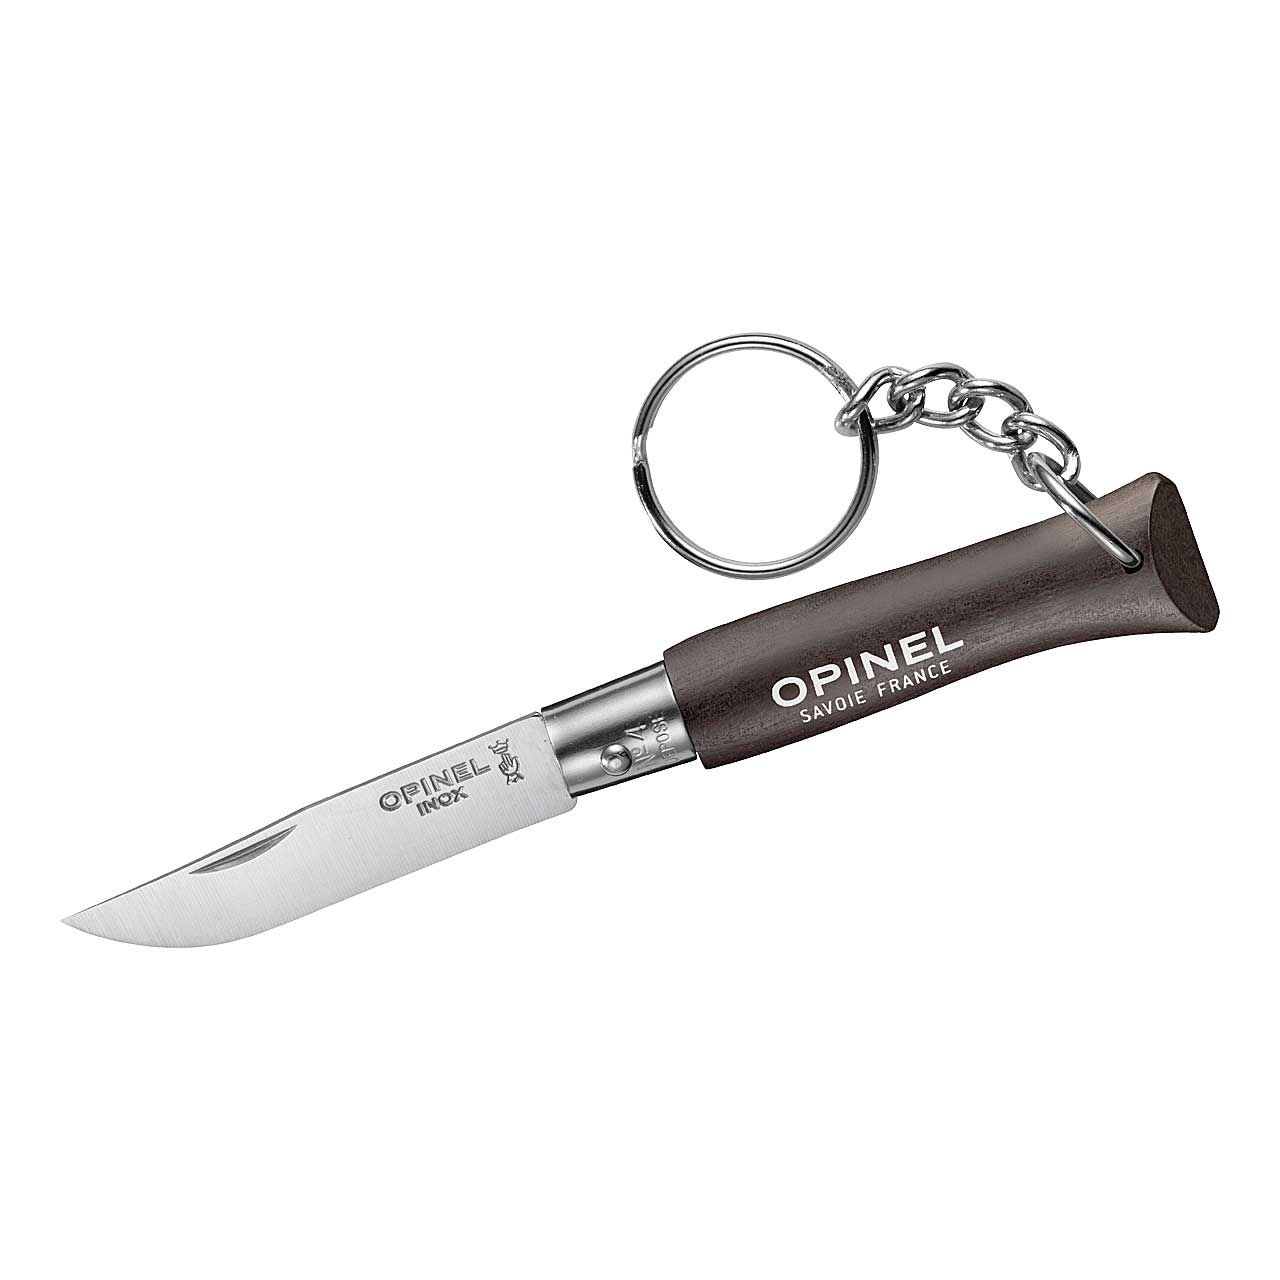 Opinel - Pocket knife COLORAMA No 04 black